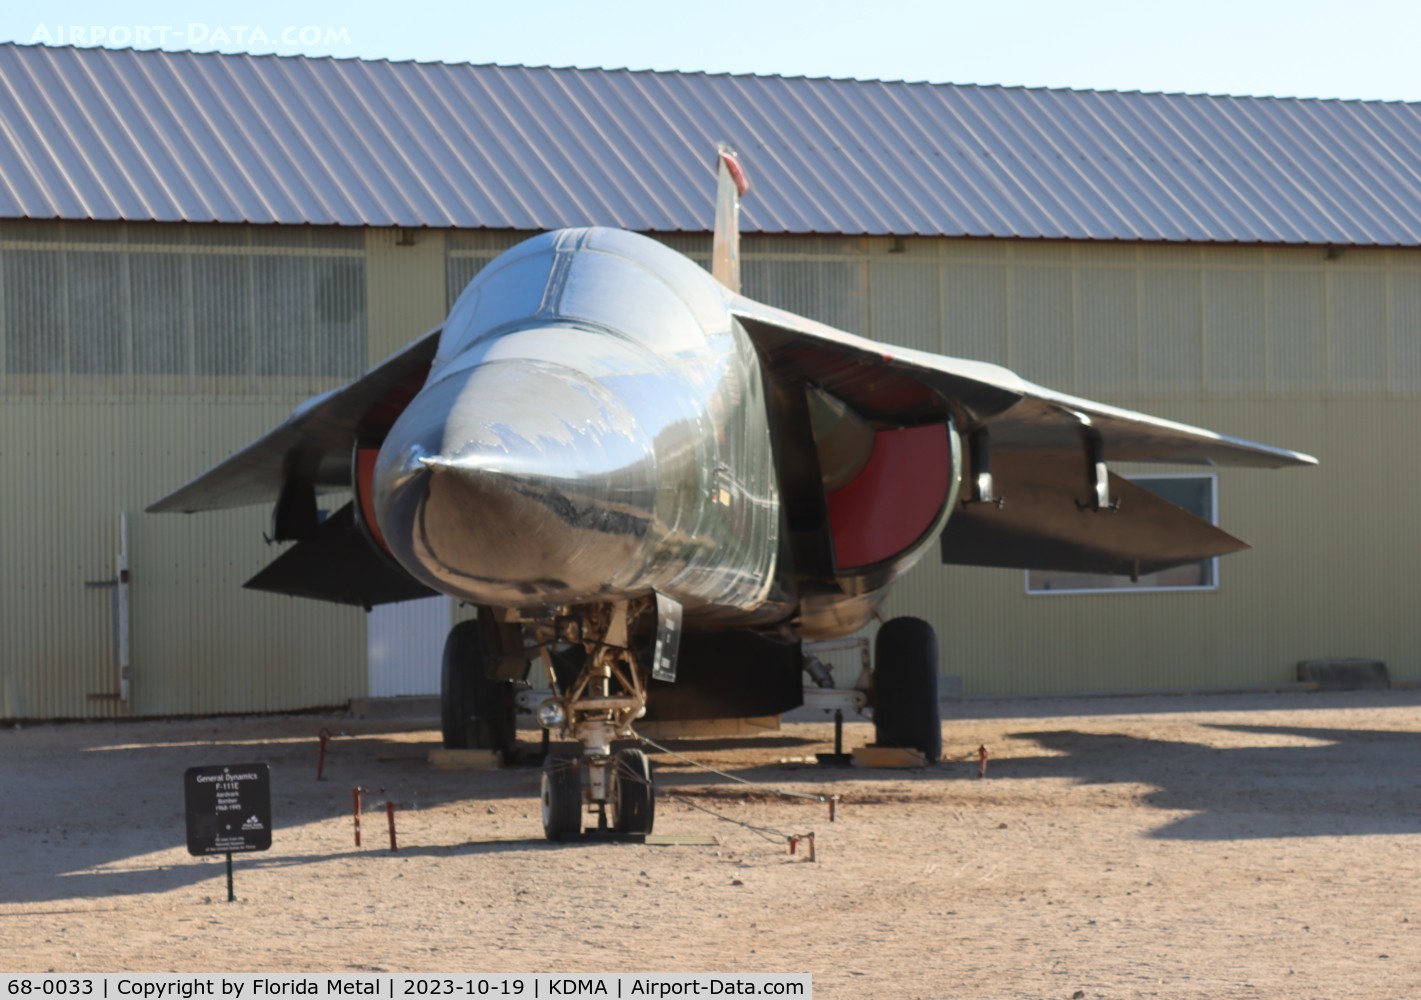 68-0033, 1968 General Dynamics F-111E Aardvark C/N A1-202, F-111 zx